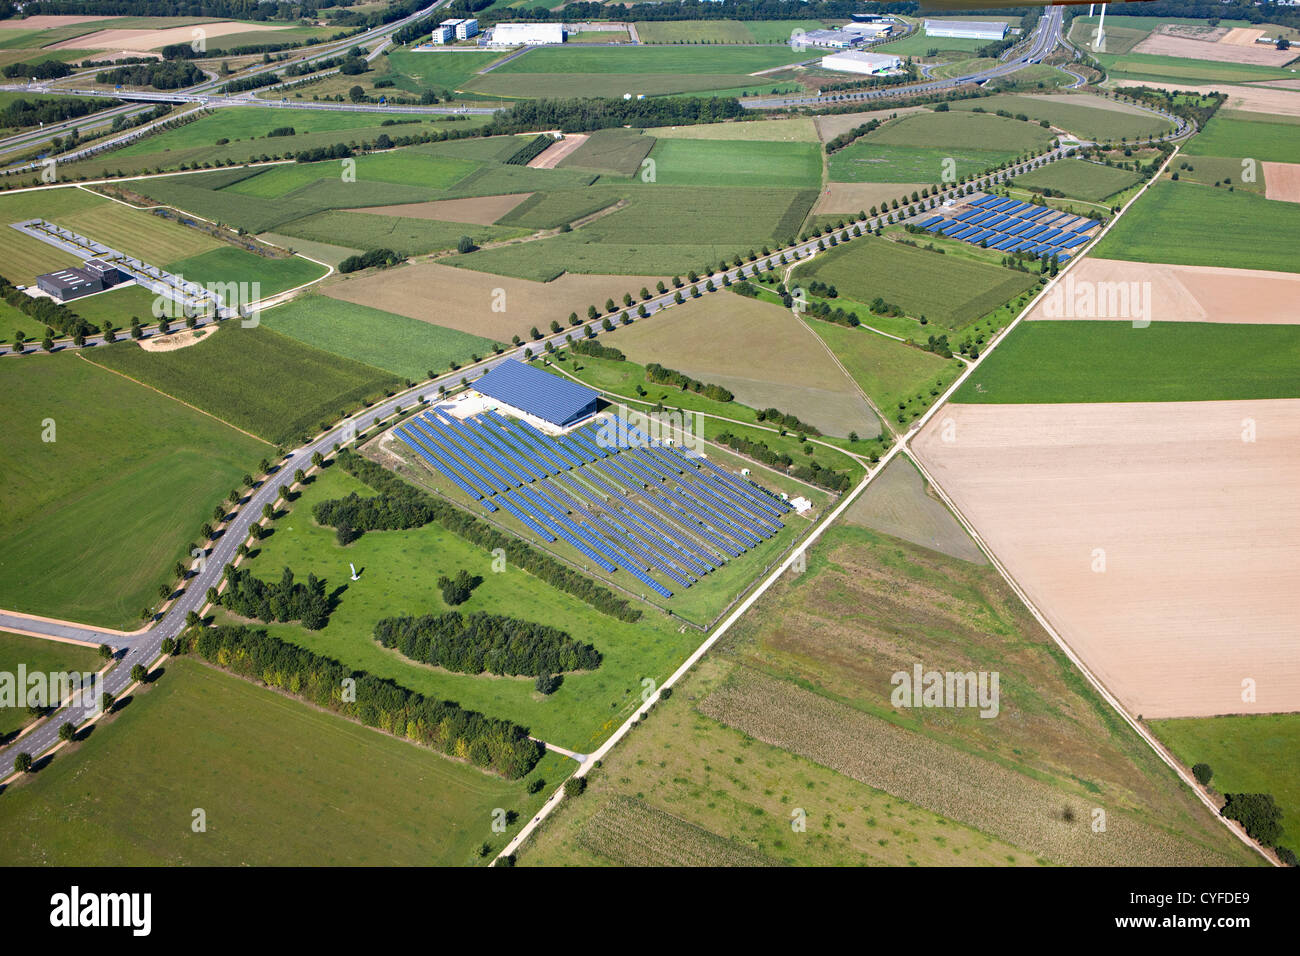 The Netherlands, Heerlen, Industrial solar panel field. Aerial. Stock Photo